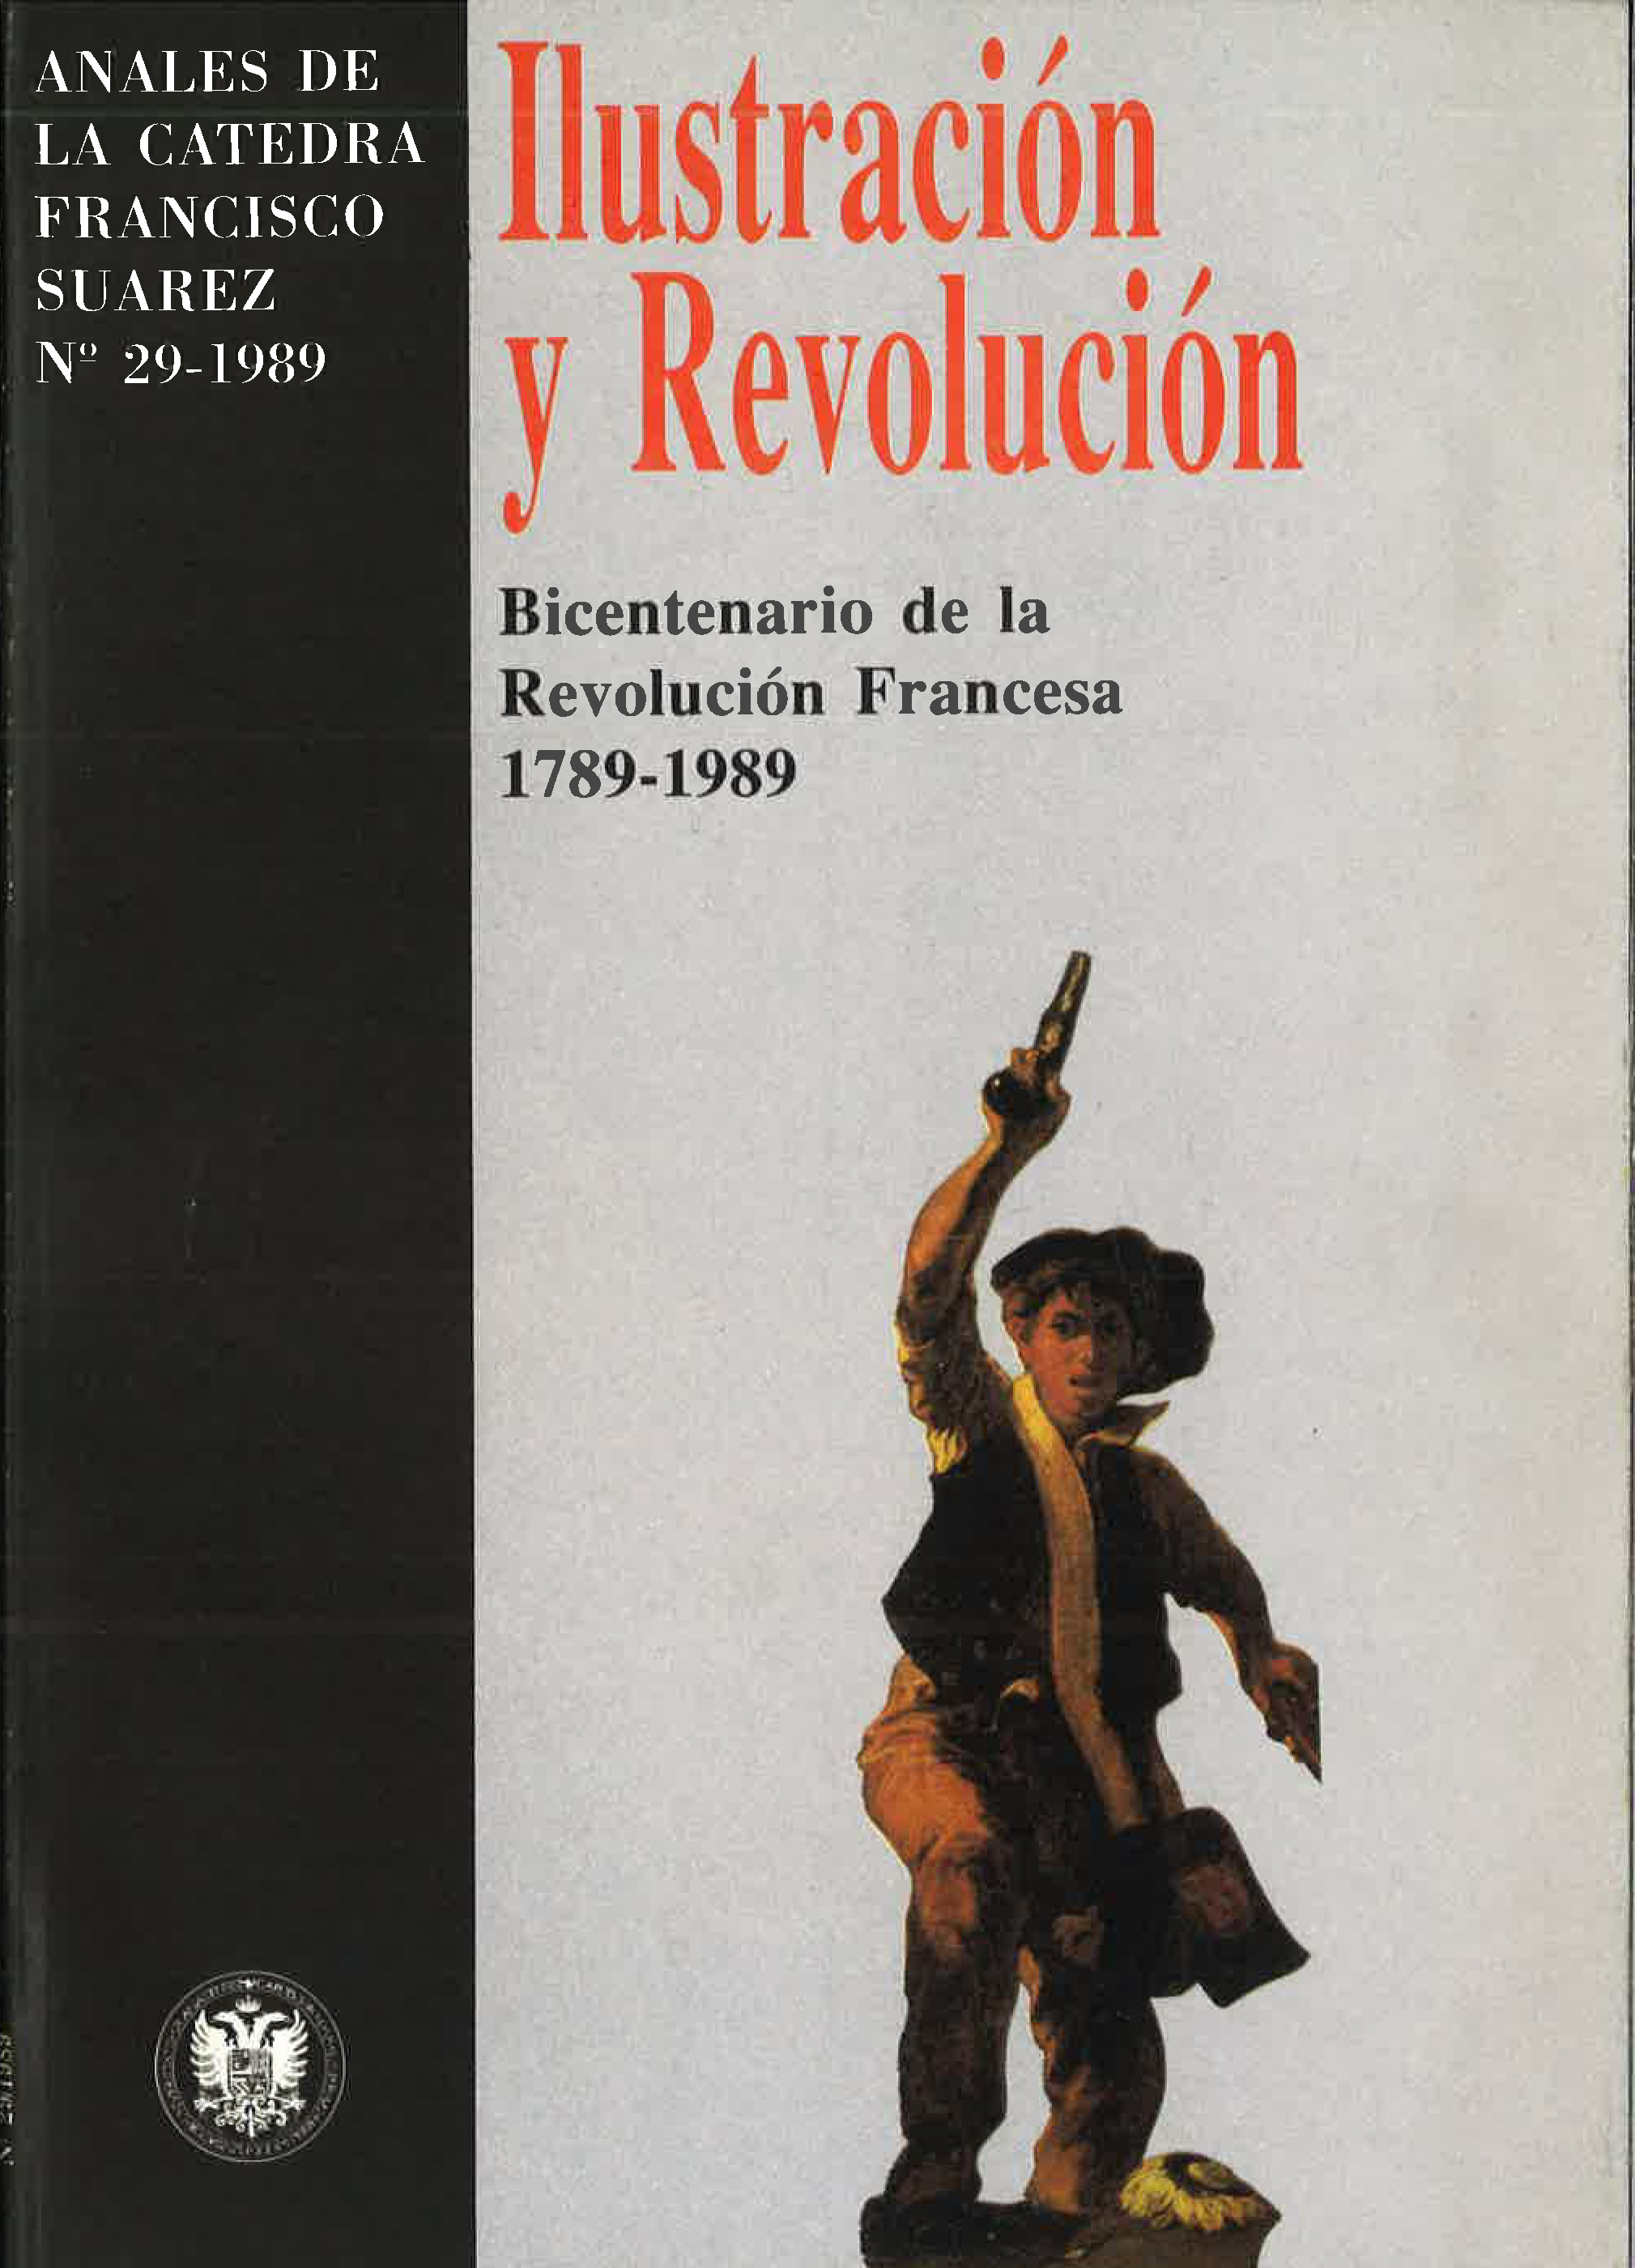 					Ver Vol. 29 (1989): Ilustración y Revolución. 1789-1989 Bicentenario de la Revolución Francesa
				